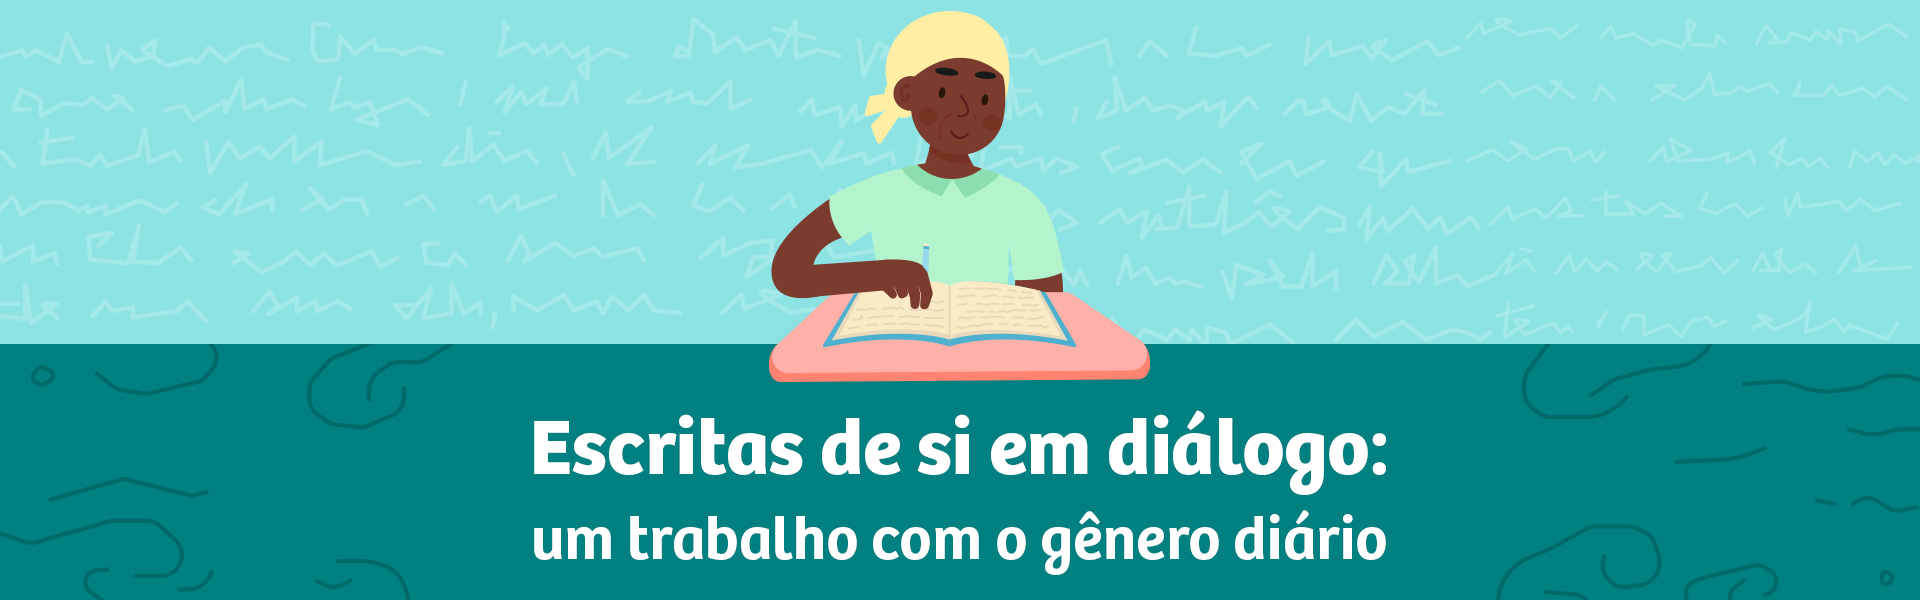 fã-clubes  Dicionário Infopédia da Língua Portuguesa